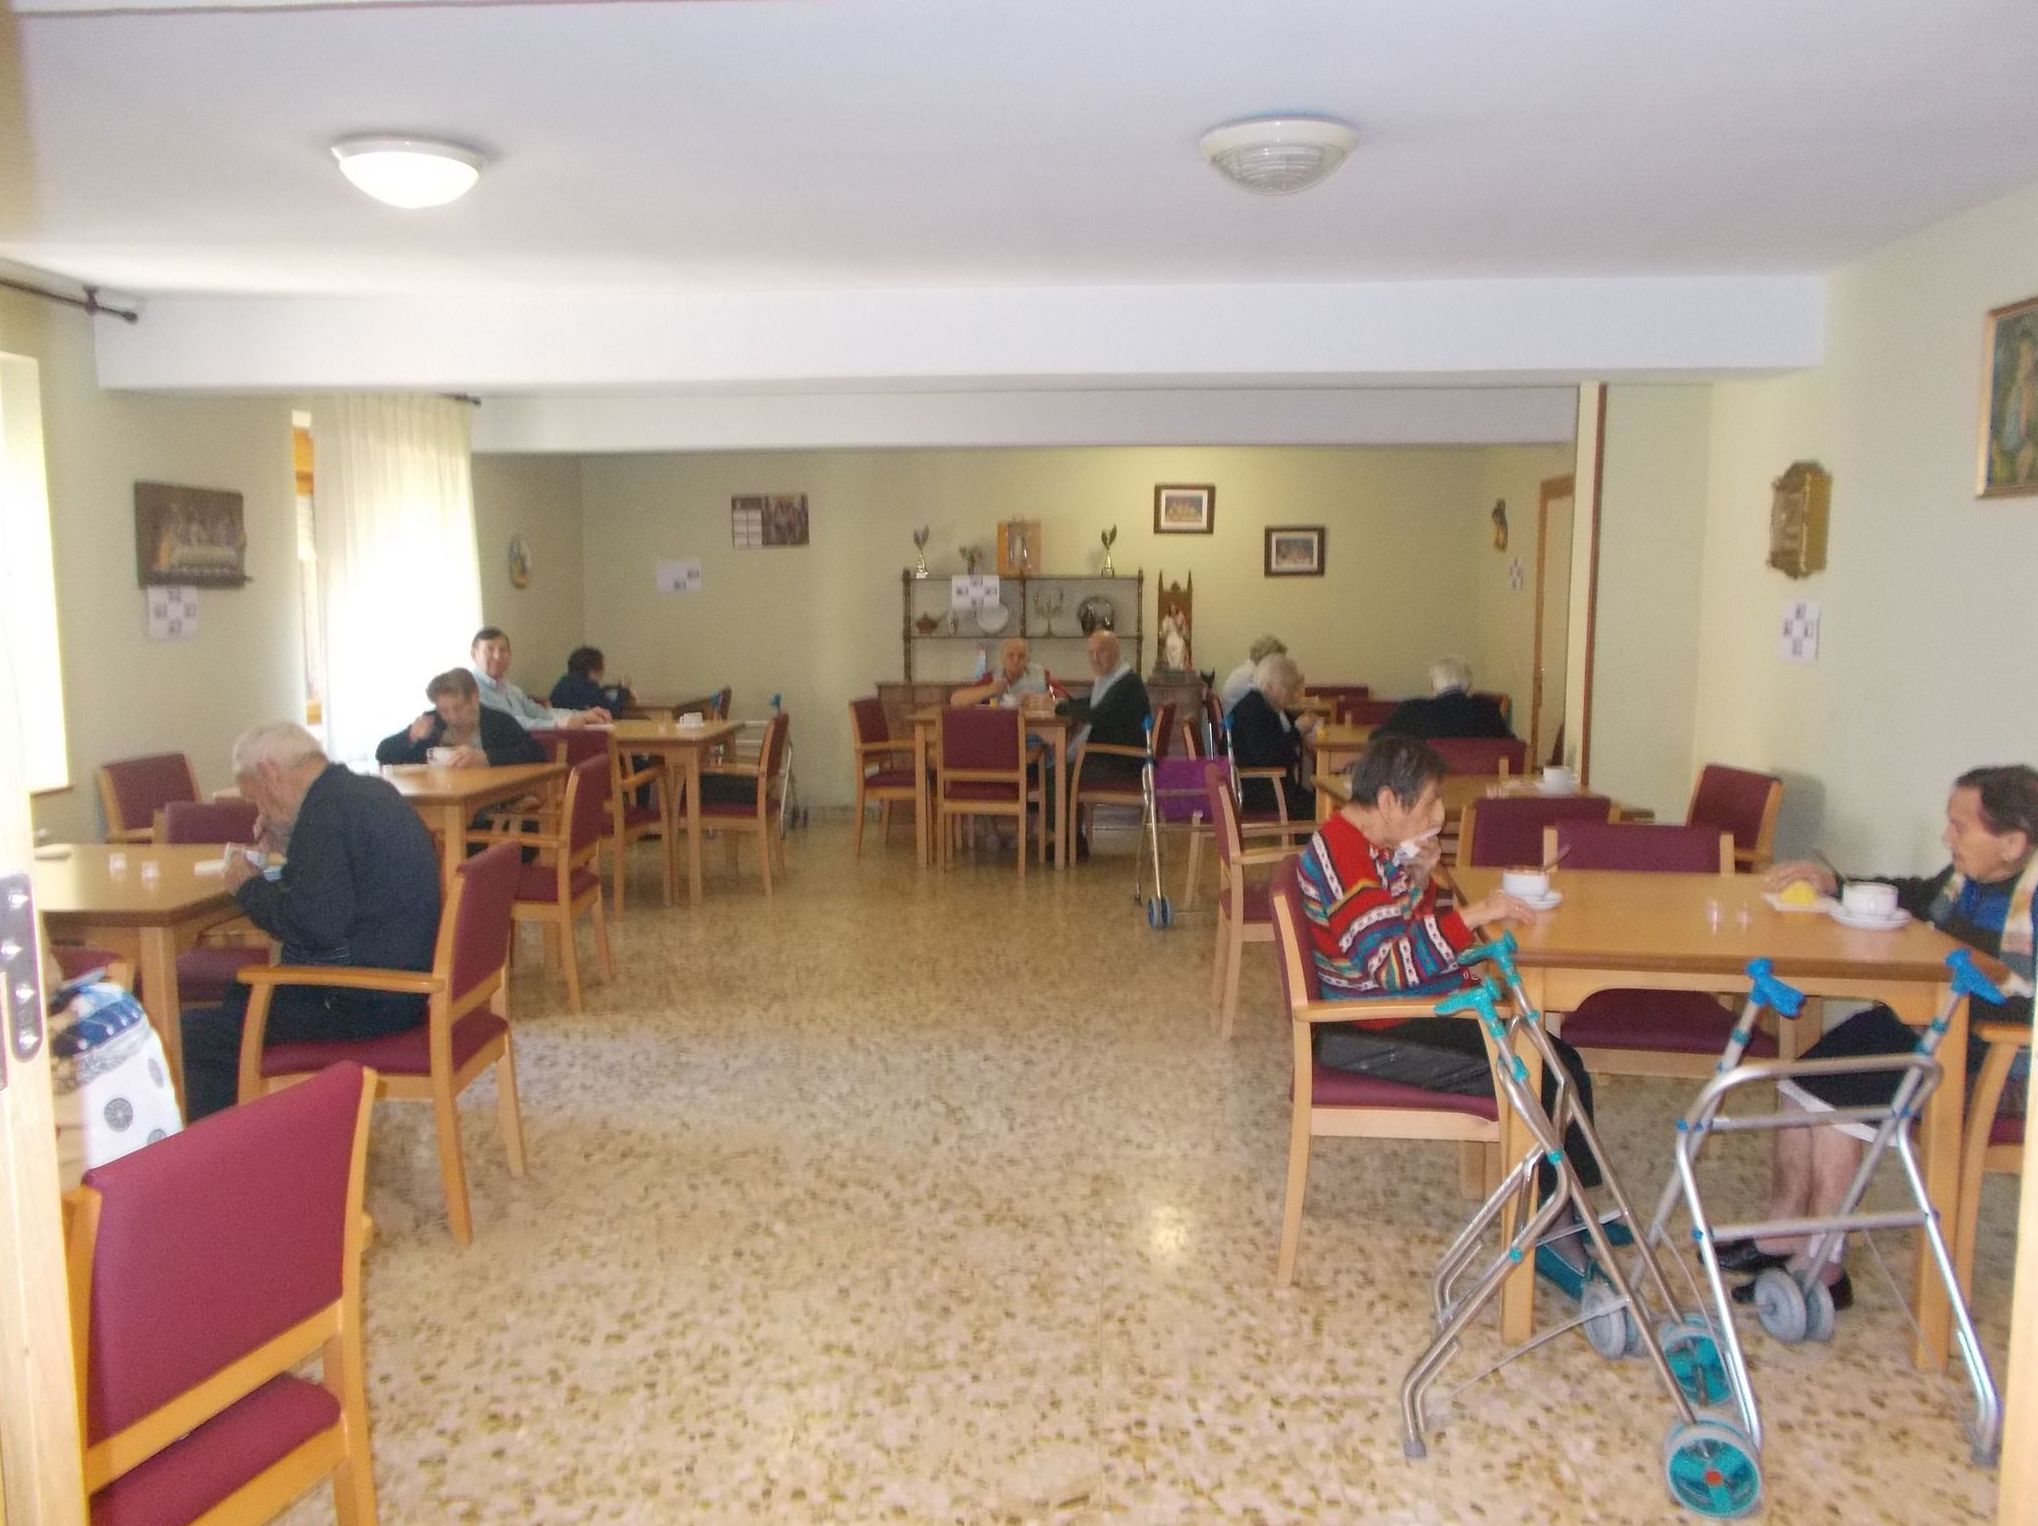 Foto 5 de Residencias geriátricas en  | Hospital San Juan Bautista de Astorga